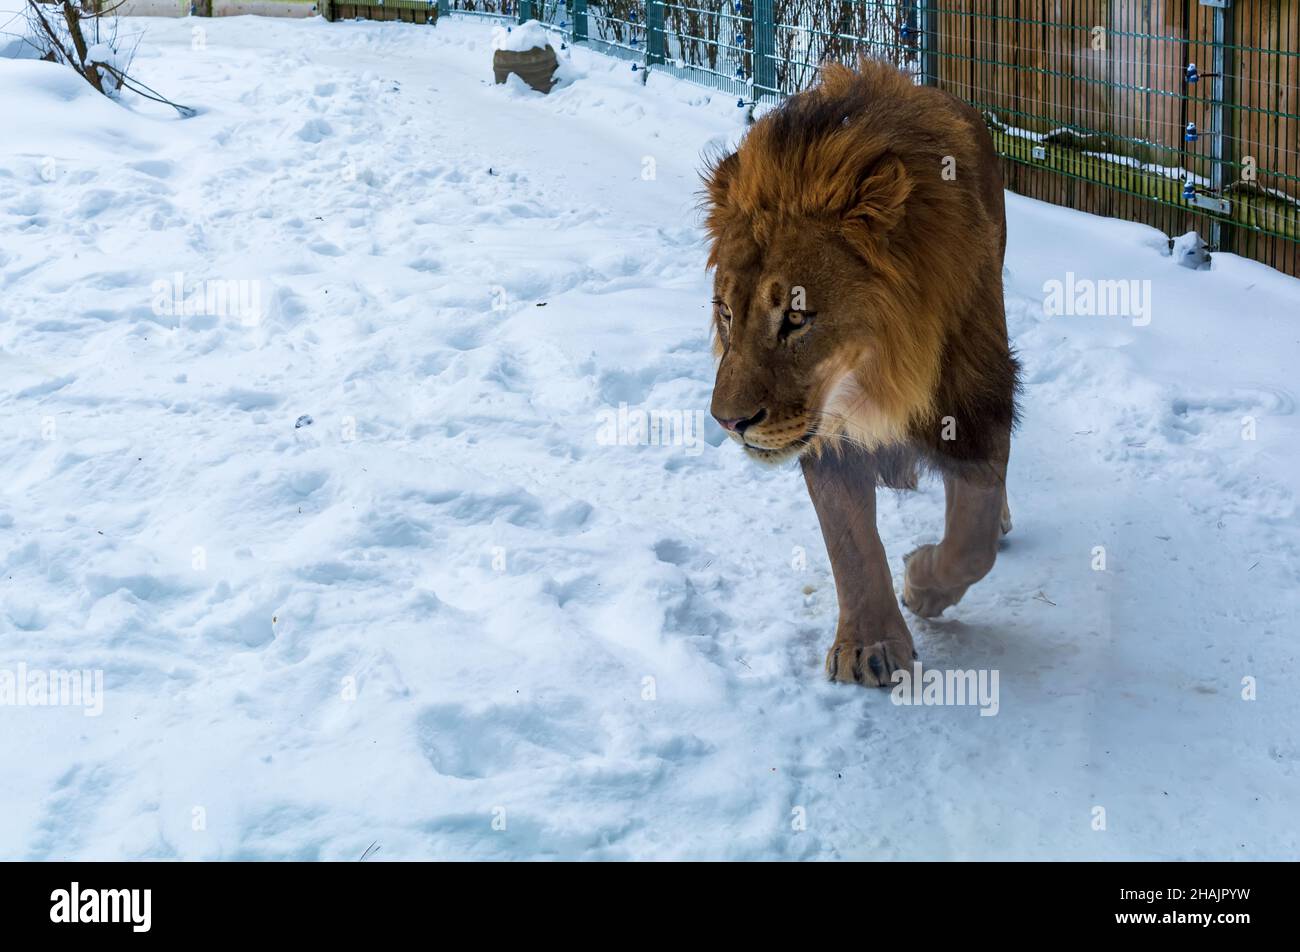 Leone africano (Panthera leo) maschio che cammina in un ambiente nevoso. Si tratta di un grande gatto muscolare con testa arrotondata e mane prominente. Foto Stock